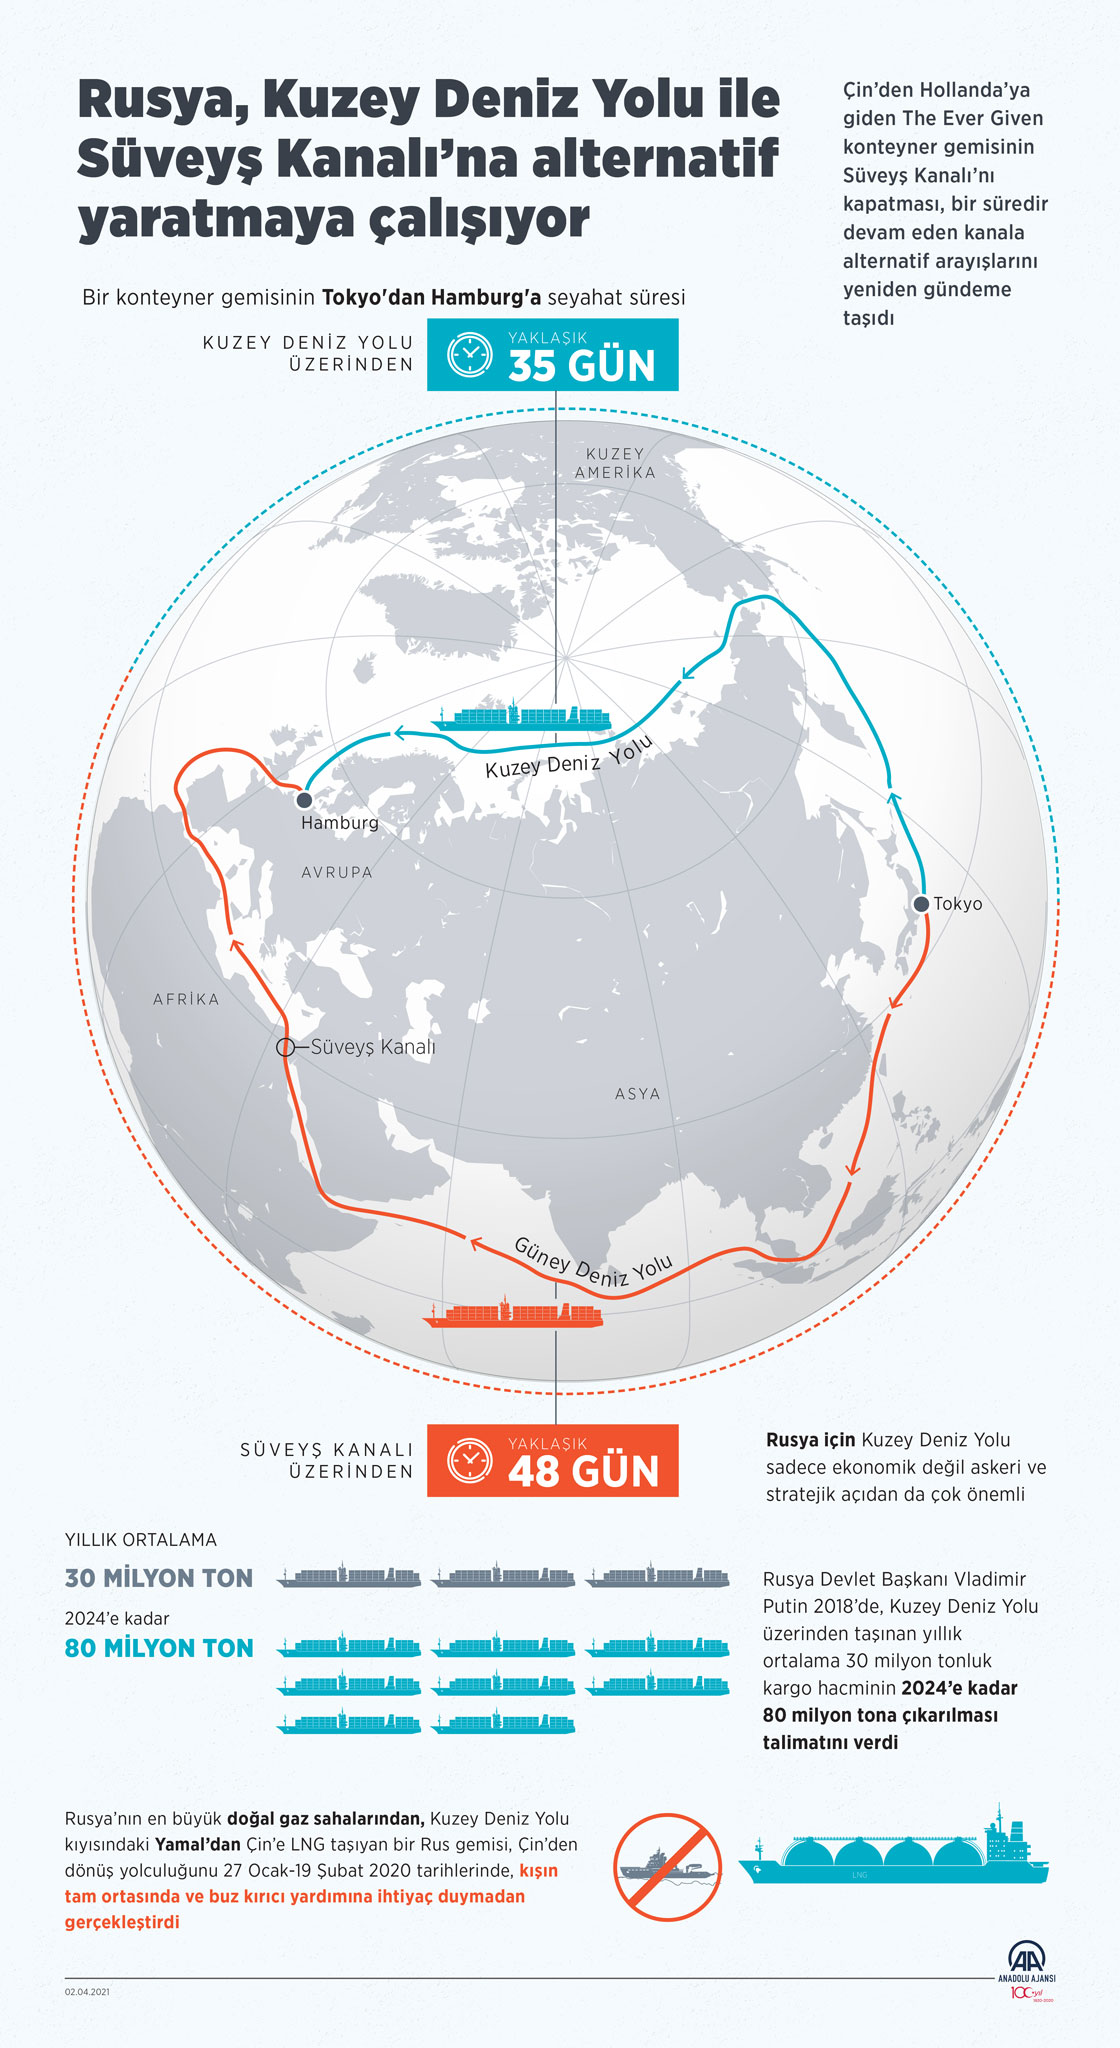 Rusya, Kuzey Deniz Yolu ile Süveyş Kanalı’na alternatif yaratmaya çalışıyor